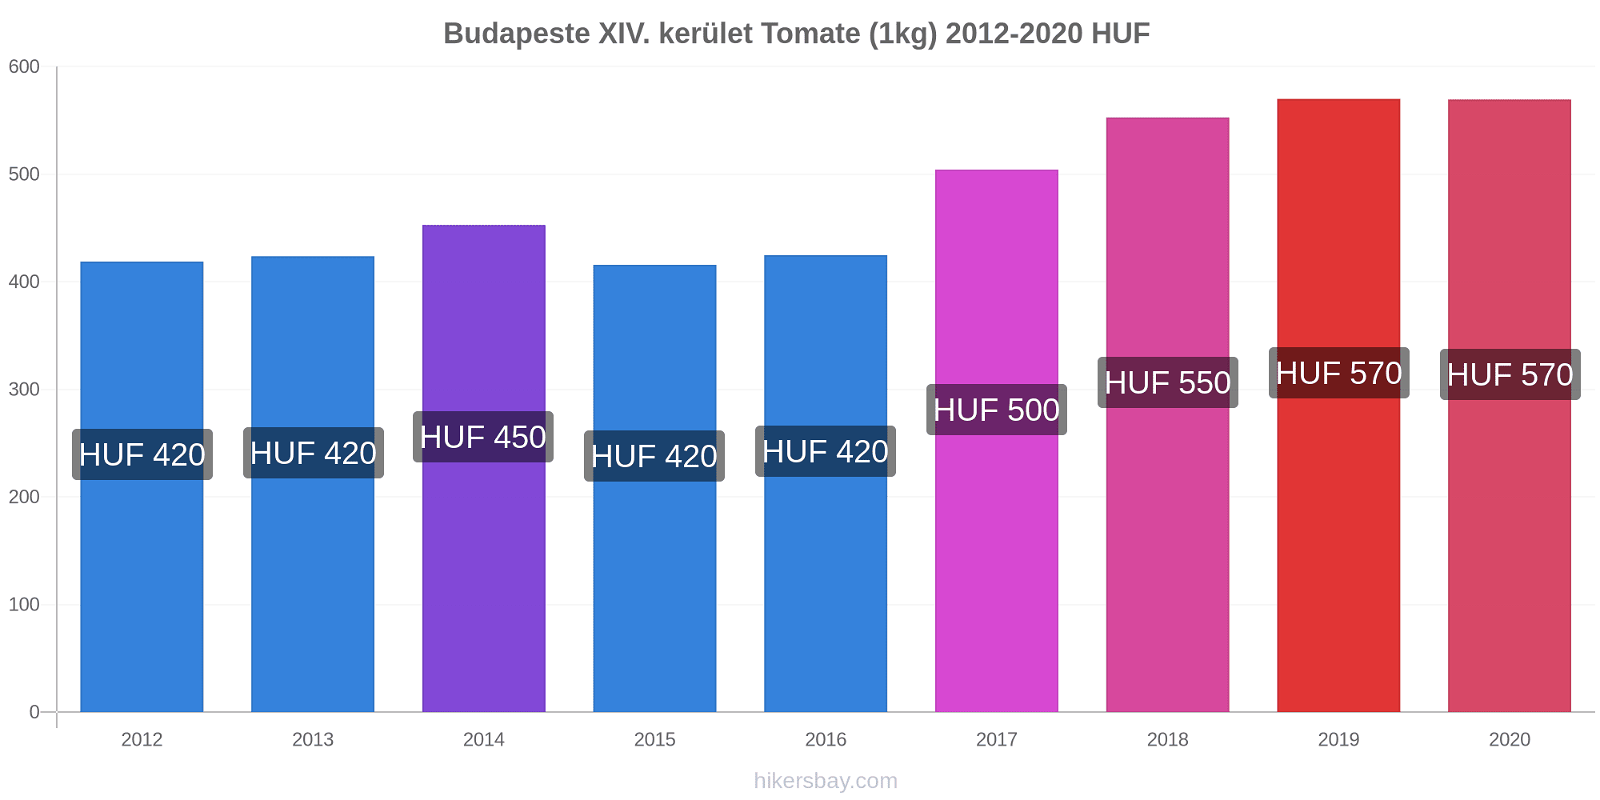 Budapeste XIV. kerület variação de preço Tomate (1kg) hikersbay.com